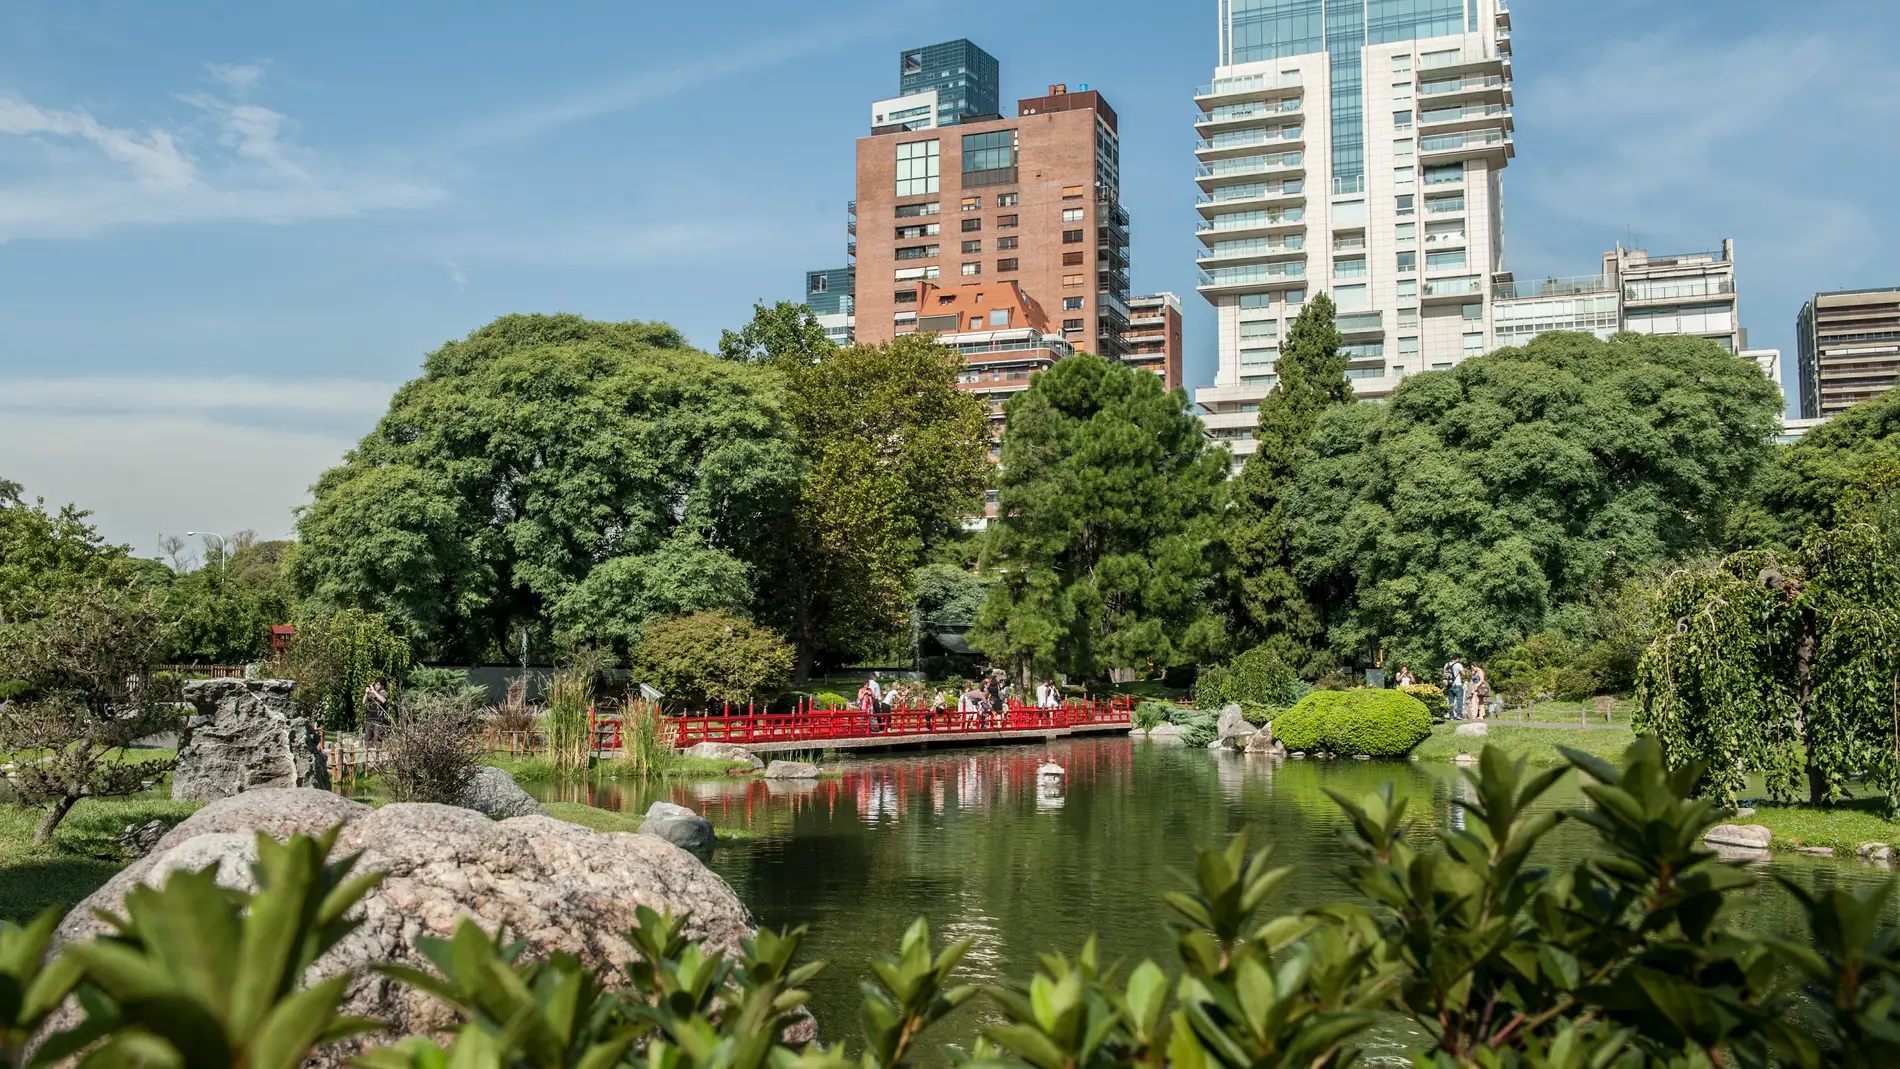 Jardín Japonés, Buenos Aires